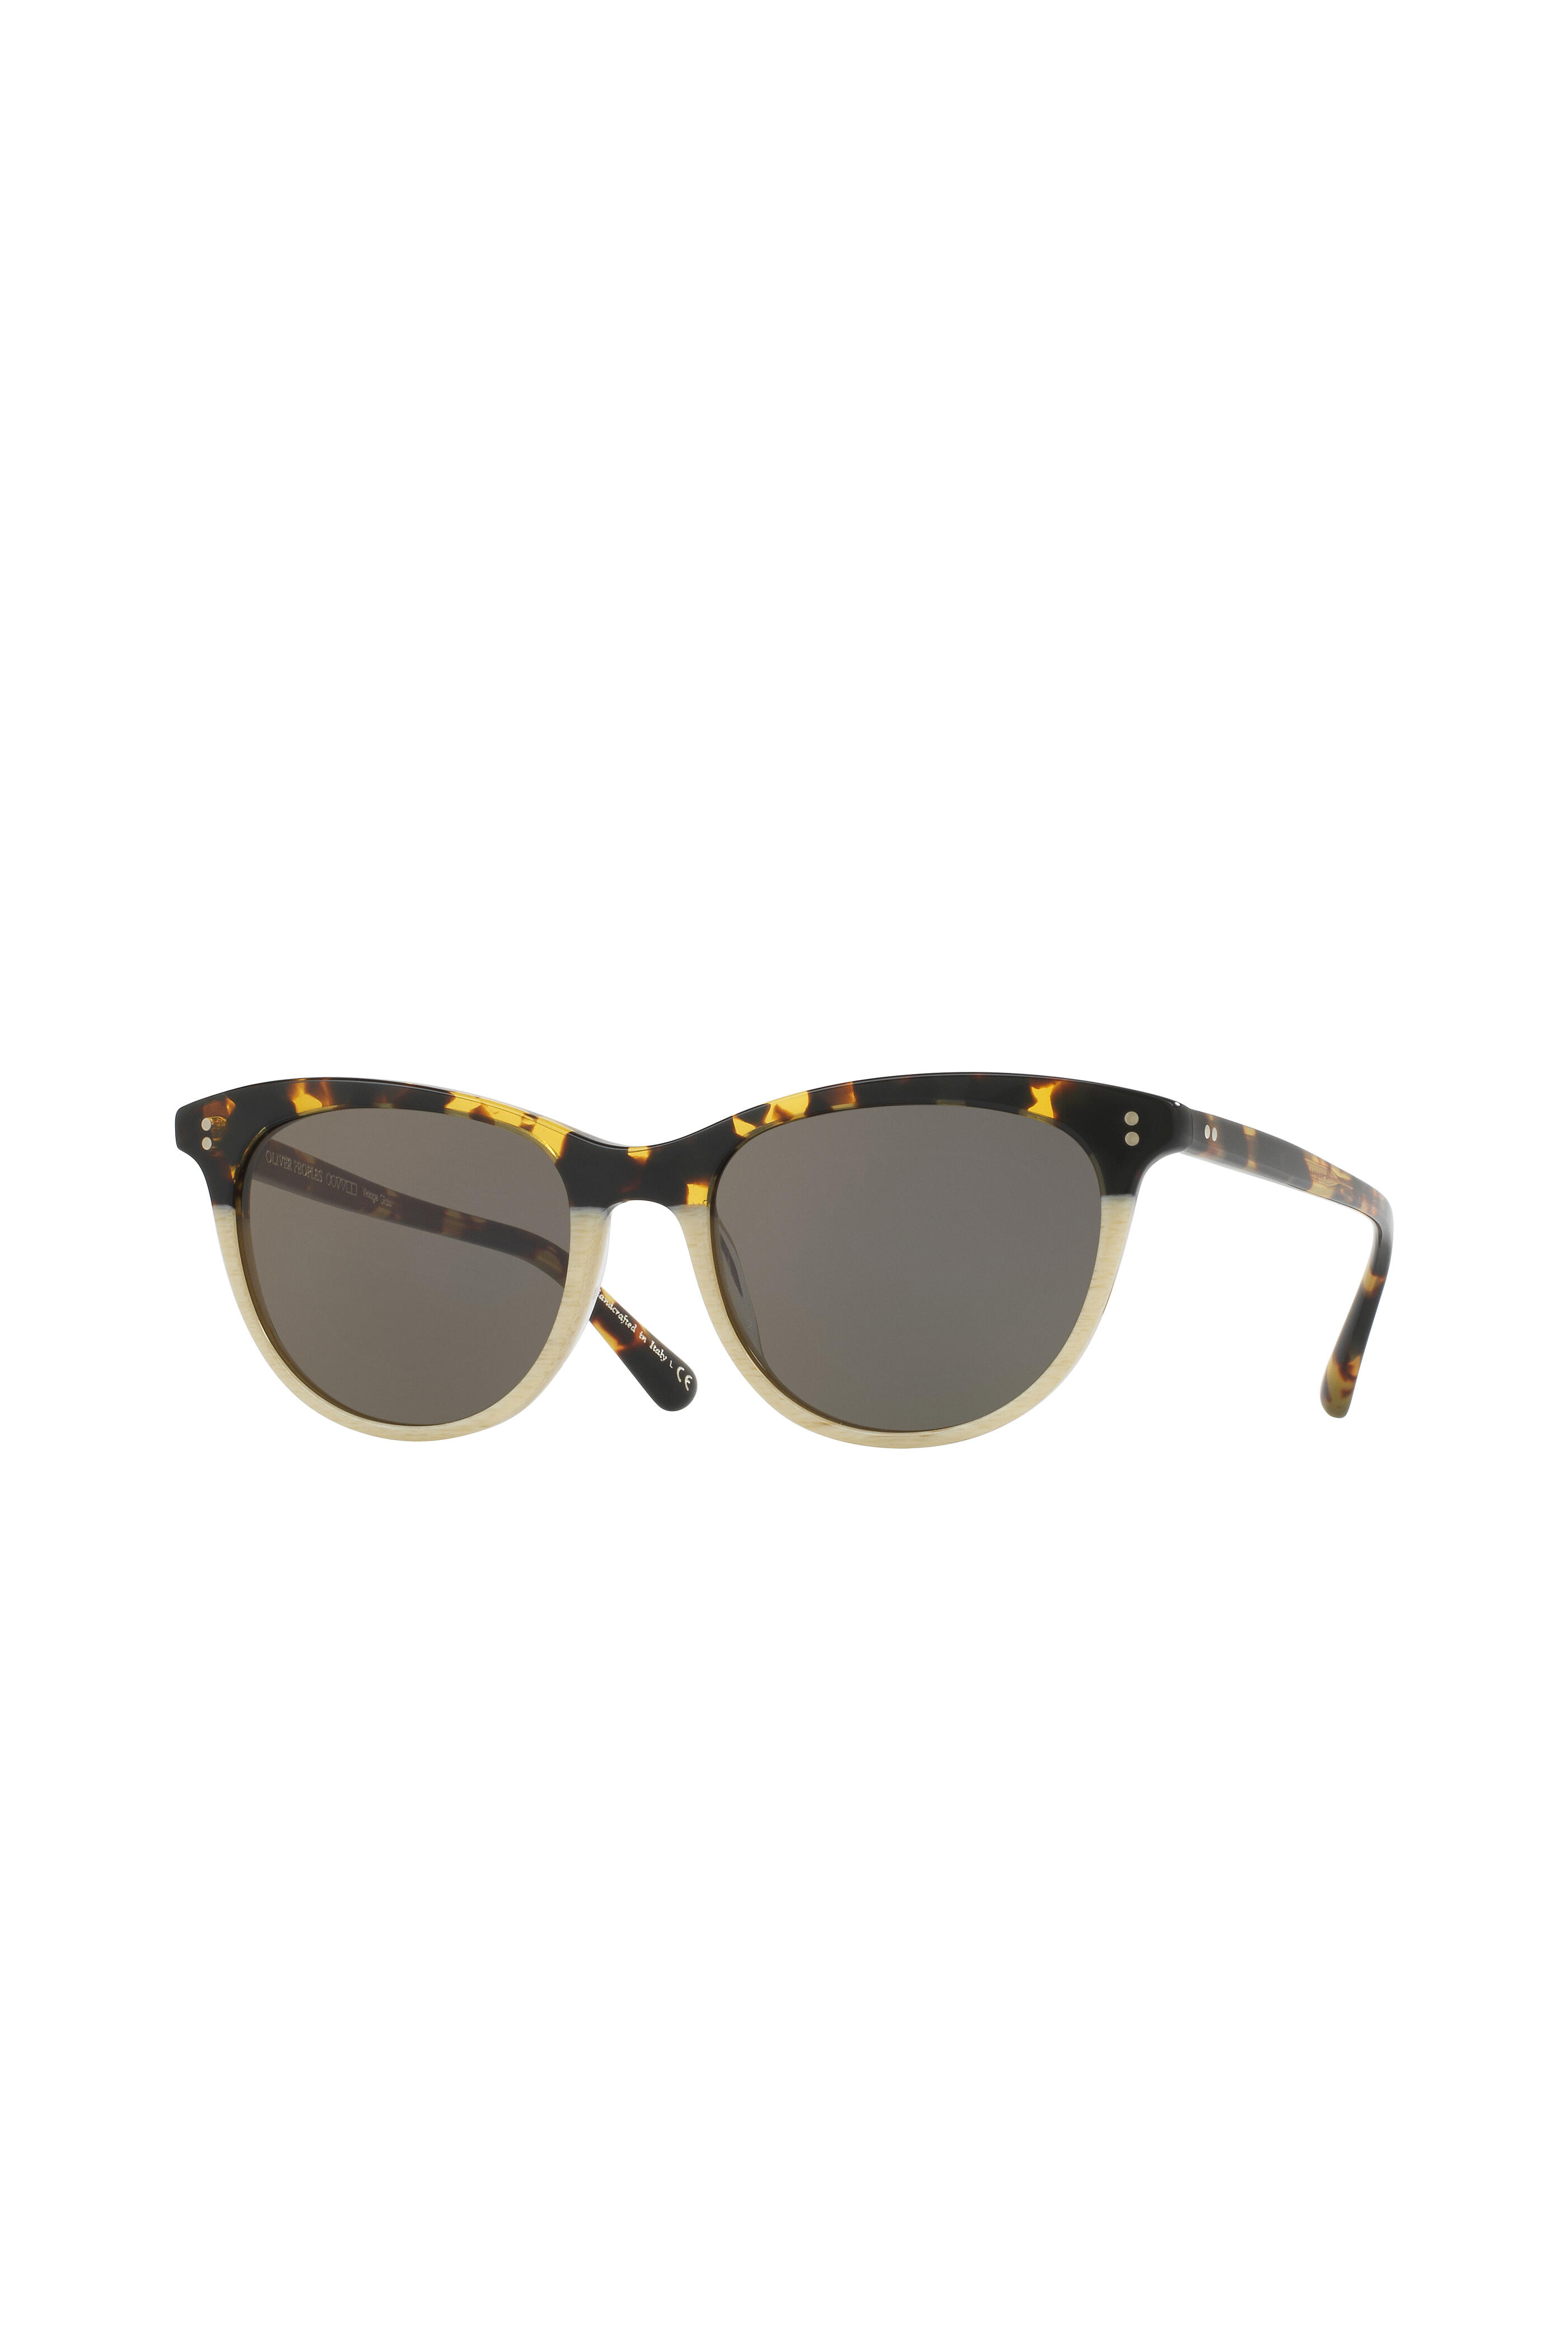 Oliver Peoples - Jardinette Sun Tortoise & Beige Sunglasses